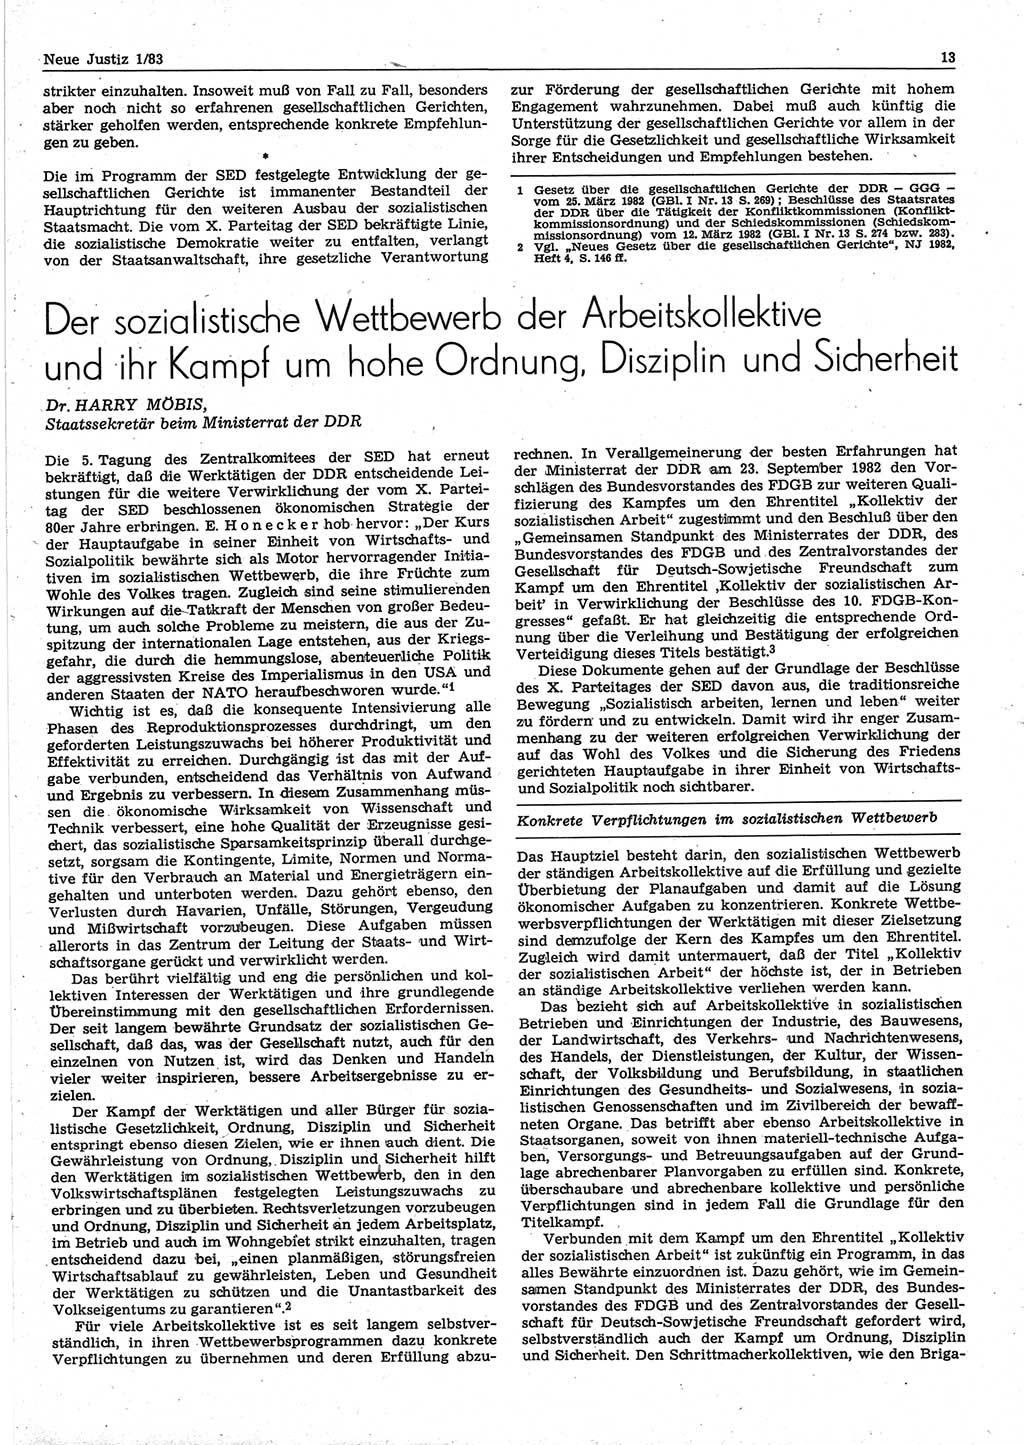 Neue Justiz (NJ), Zeitschrift für sozialistisches Recht und Gesetzlichkeit [Deutsche Demokratische Republik (DDR)], 37. Jahrgang 1983, Seite 13 (NJ DDR 1983, S. 13)